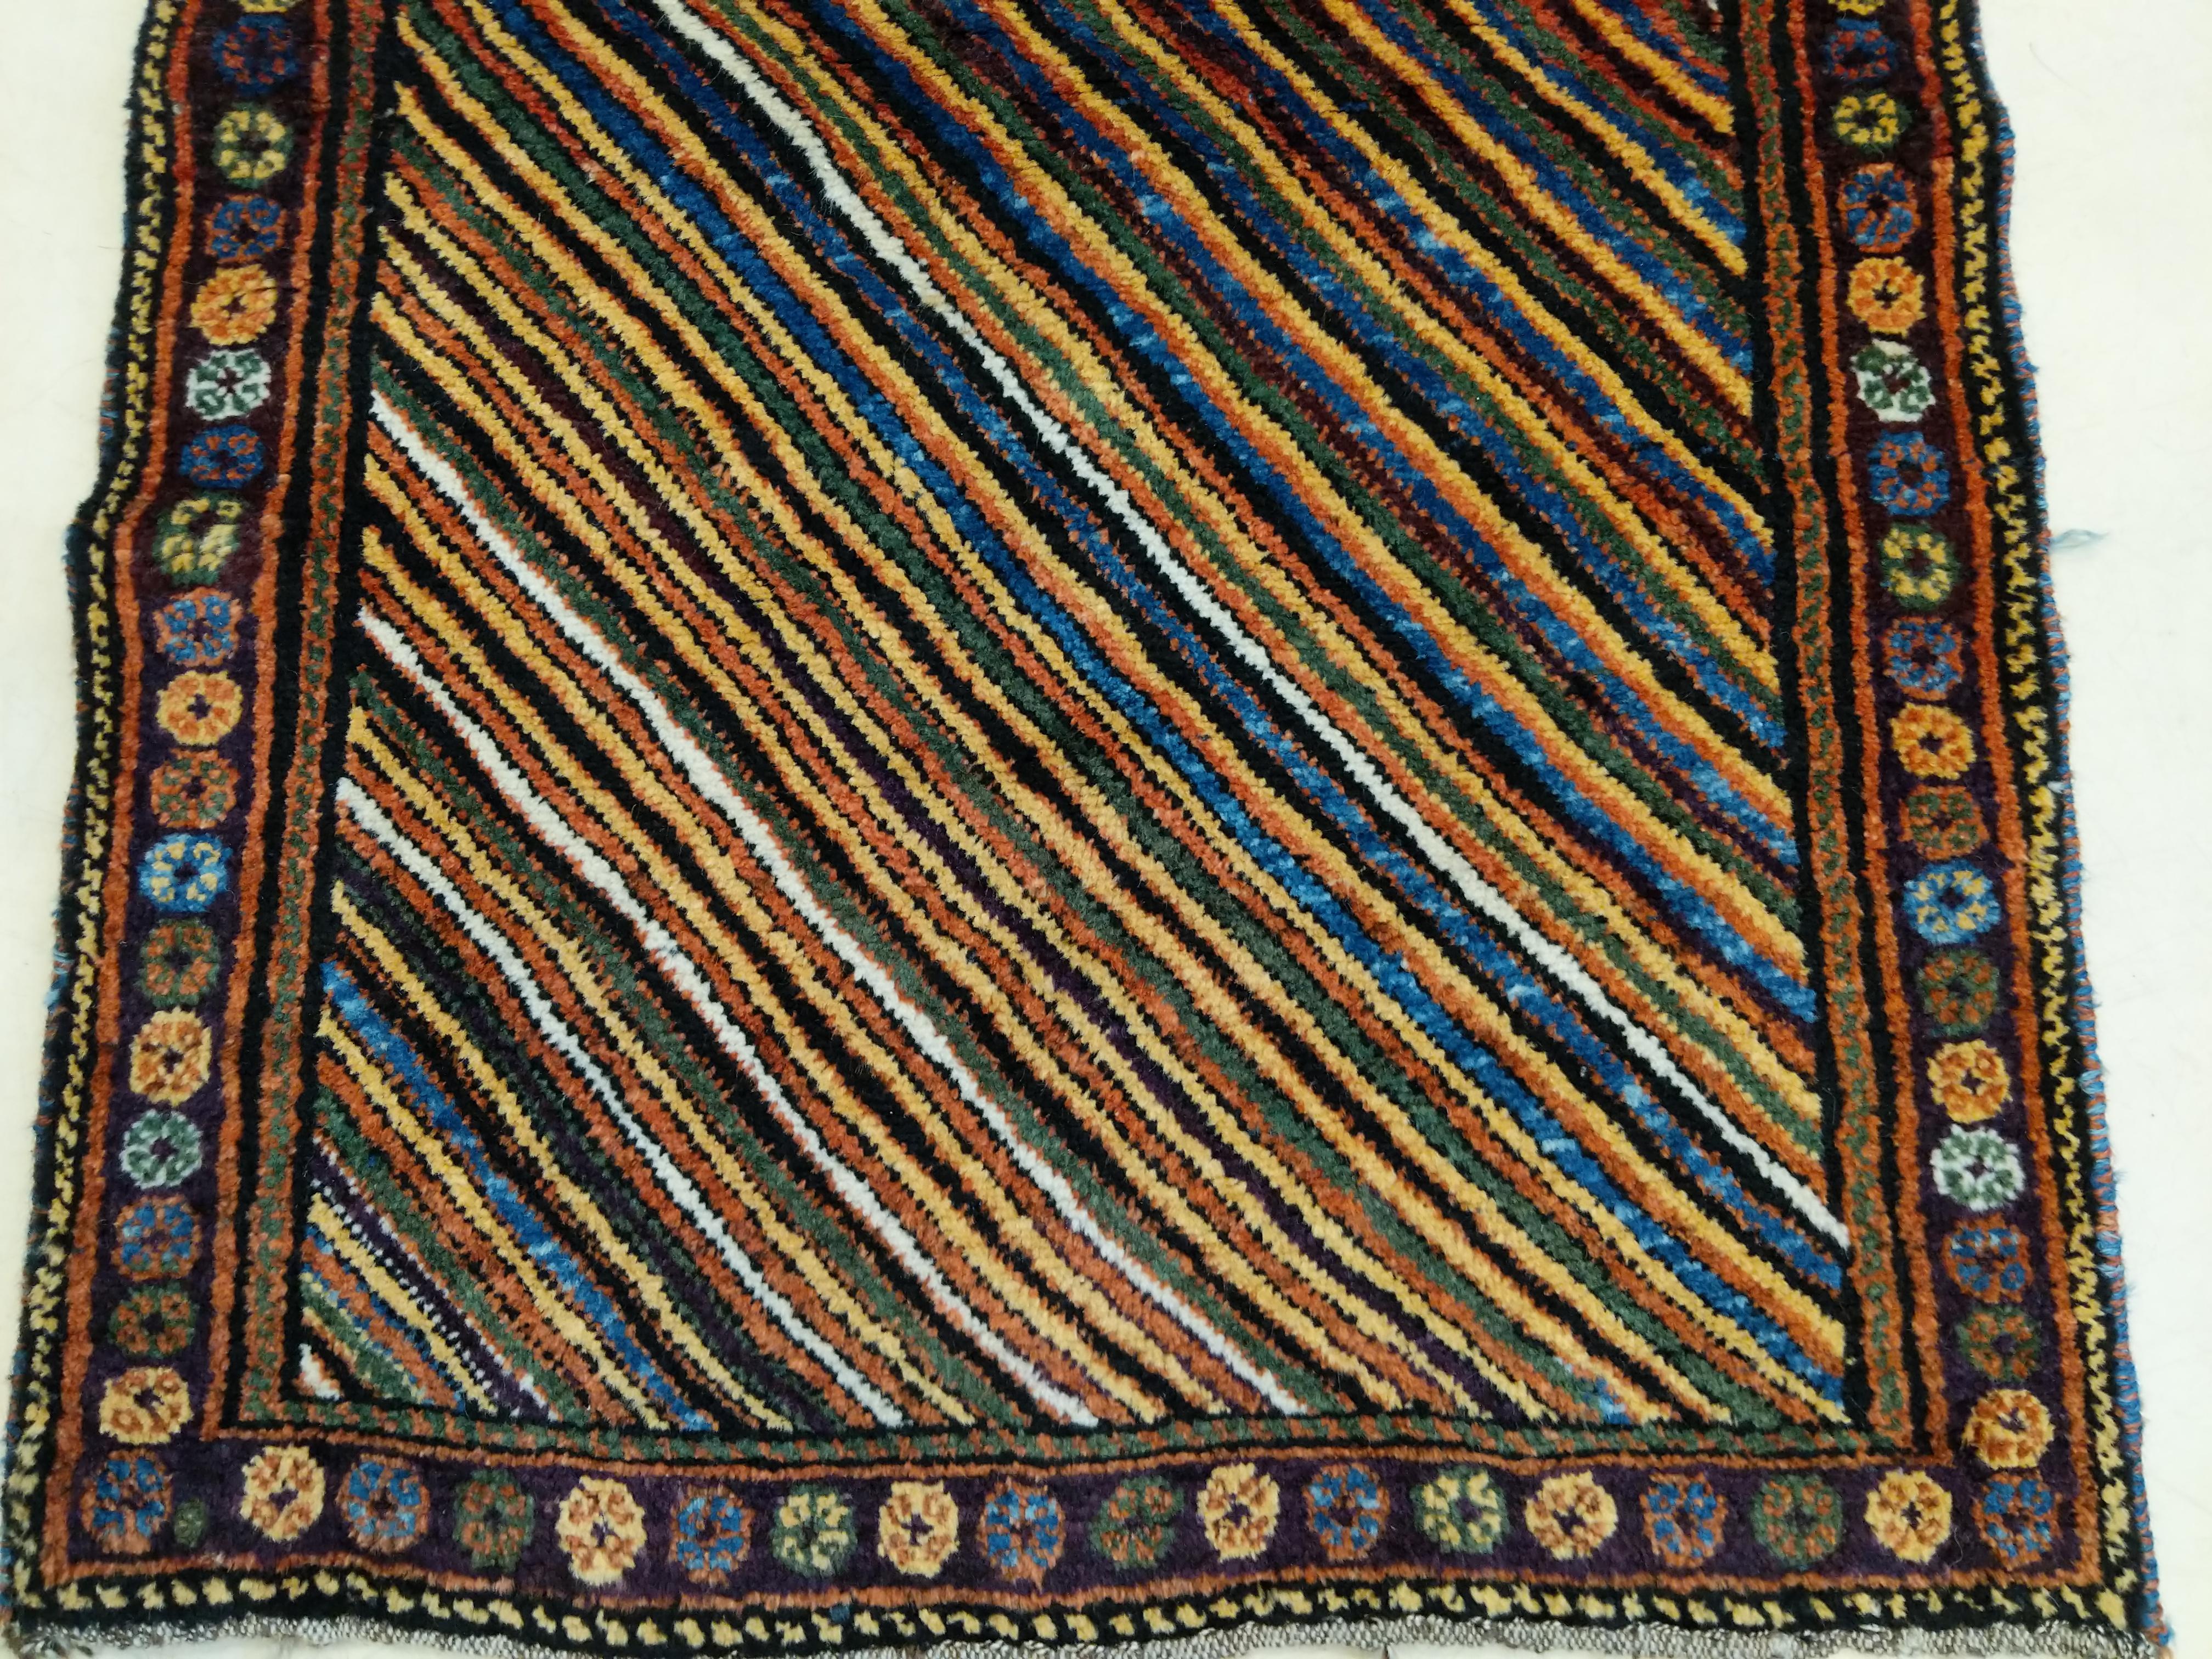 Ein kurdischer Stammesteppich, der sich durch ein Regenbogenmuster aus polychromen Diagonalen auszeichnet, das von einer einfachen Bordüre aus kleinen Oktogonen eingerahmt wird. Der weiche, üppige Flor ist typisch für die beste Qualität von